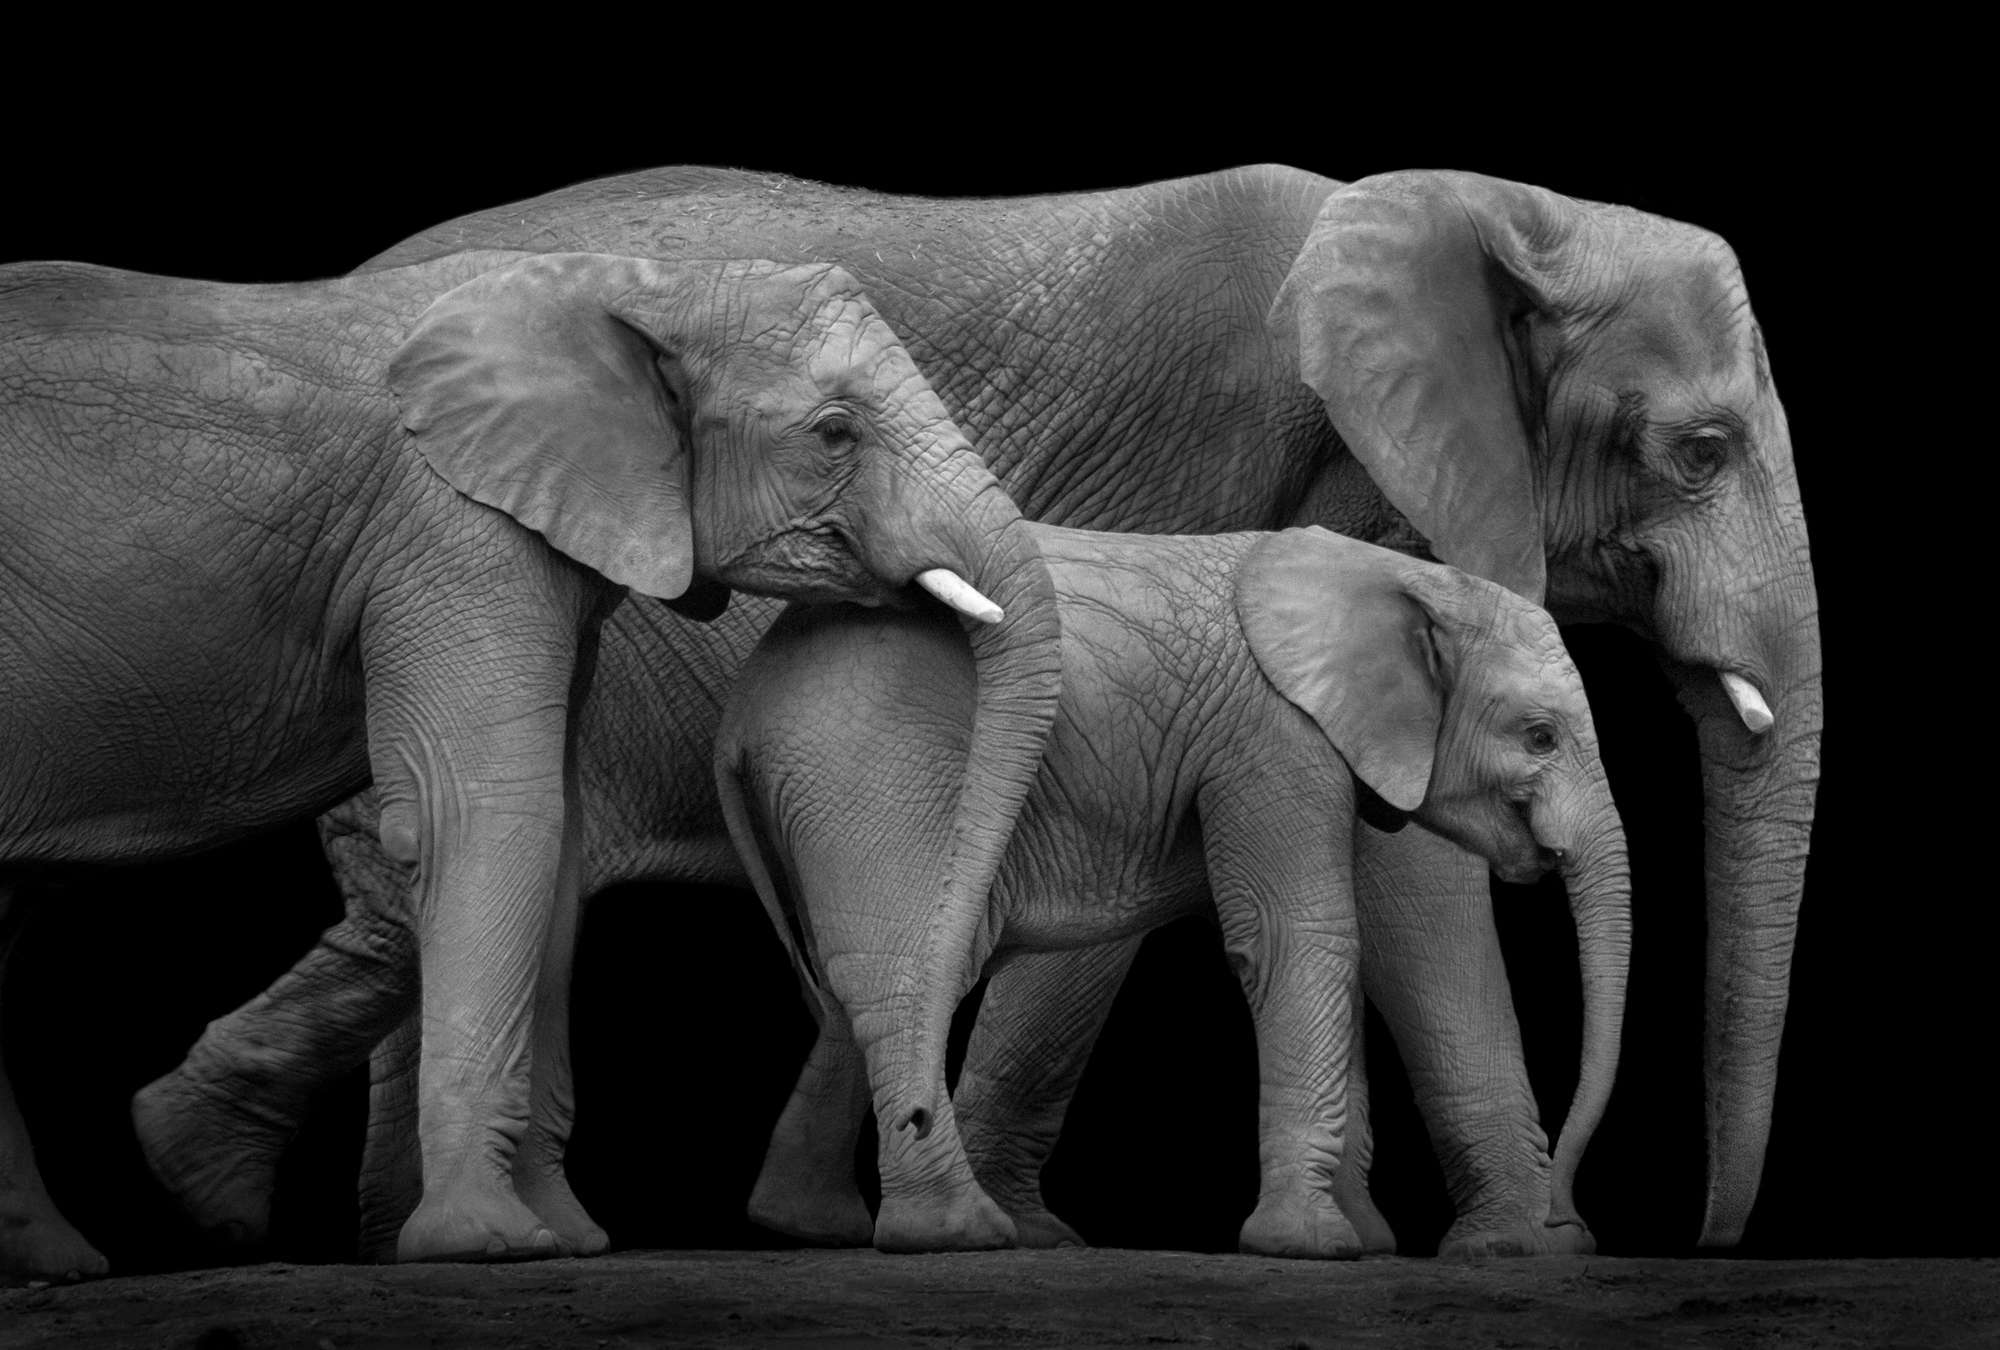             Fotomurali della famiglia di elefanti su sfondo nero
        